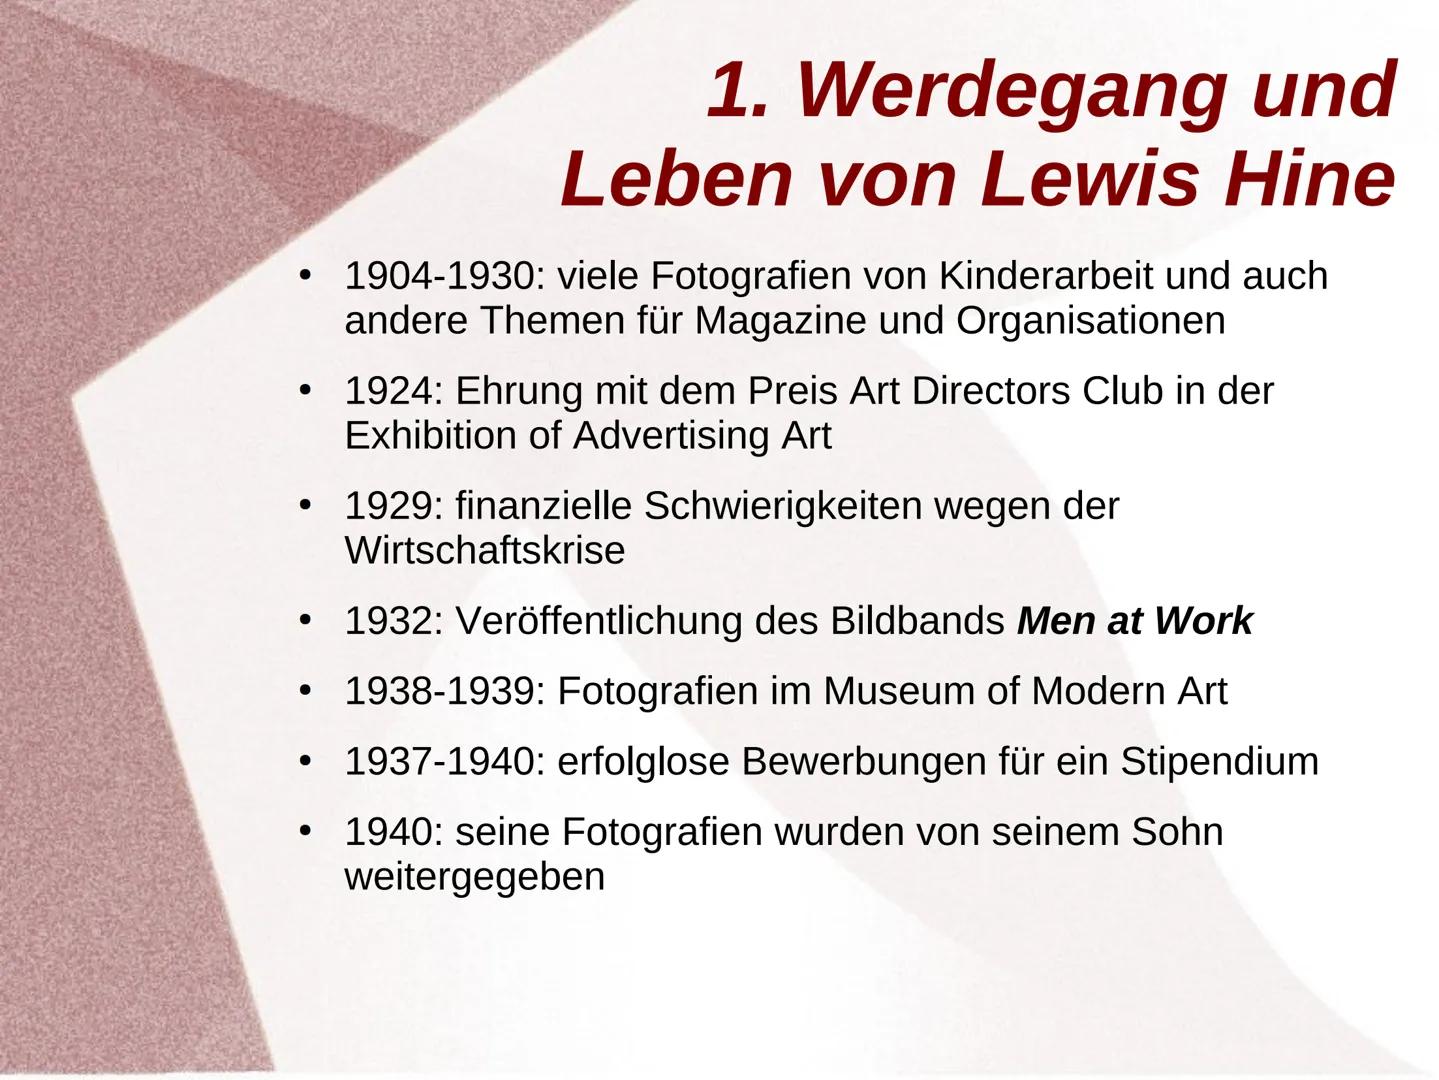 Lewis Hine Gliederung
1. Werdegang
2. künstlerische Position, Sichtweise und Haltung des
Künstlers
3. Ziele und Konzepte
4. Arbeit (Kamera, 